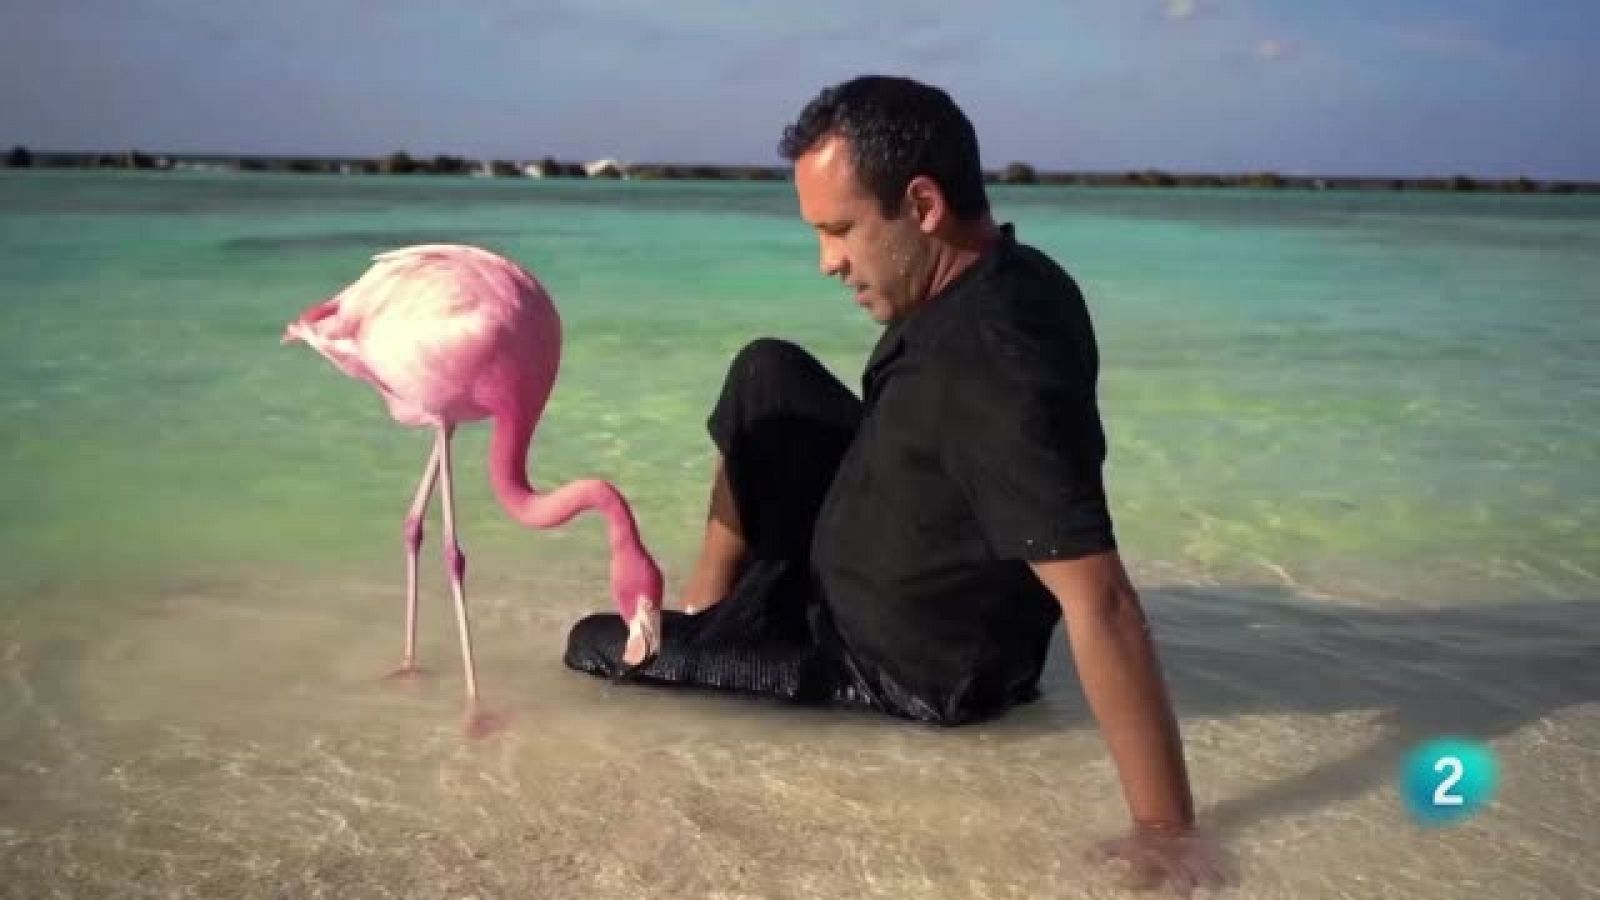 Documentales: 'The mystery of the pink flamingo' y 'Anatomía de un dandy'